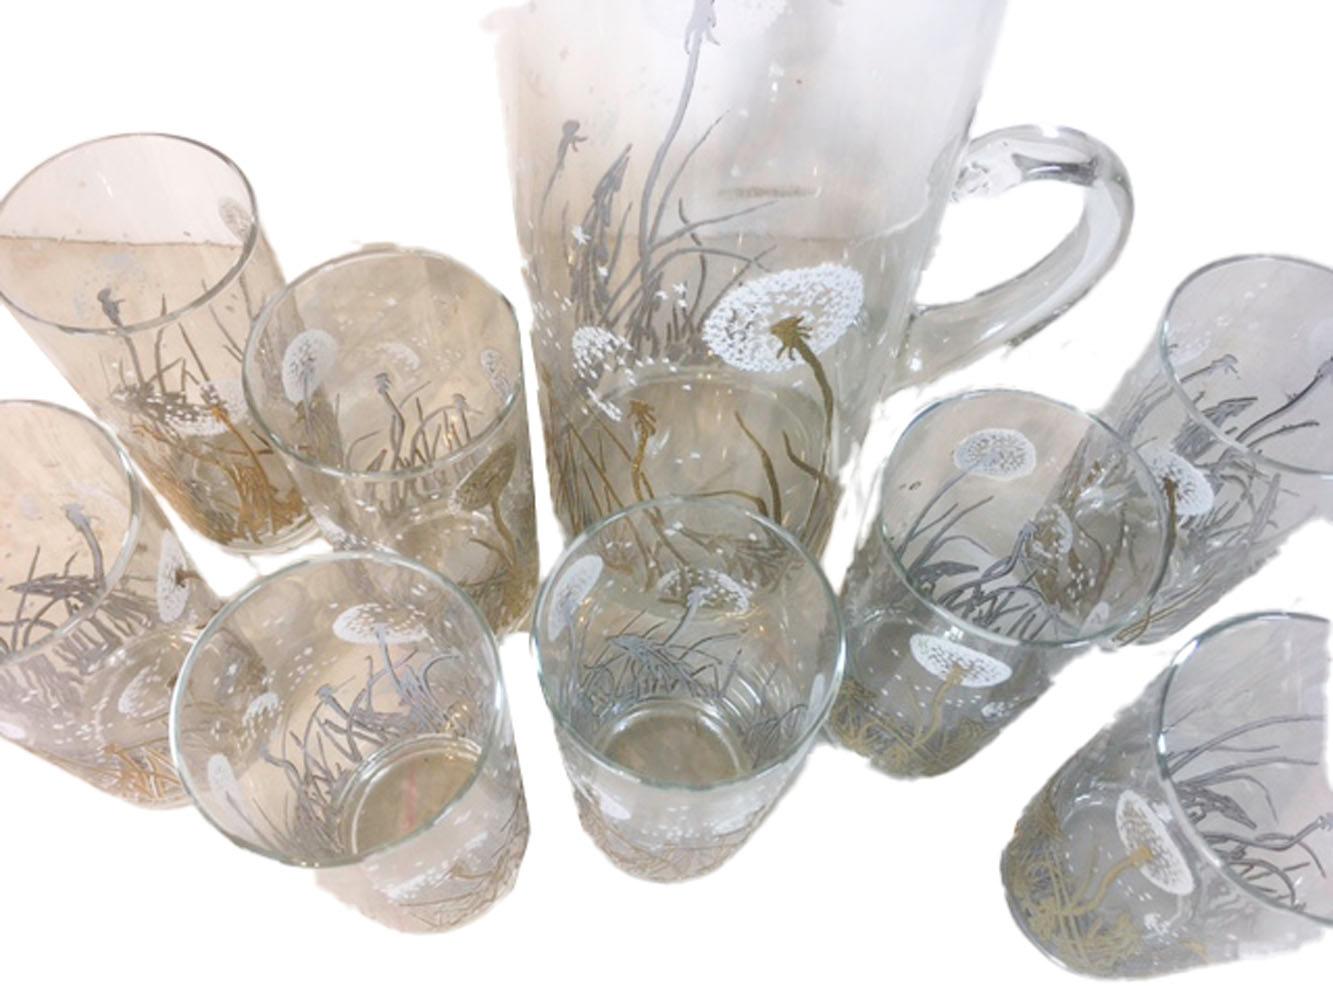 gregory duncan glassware